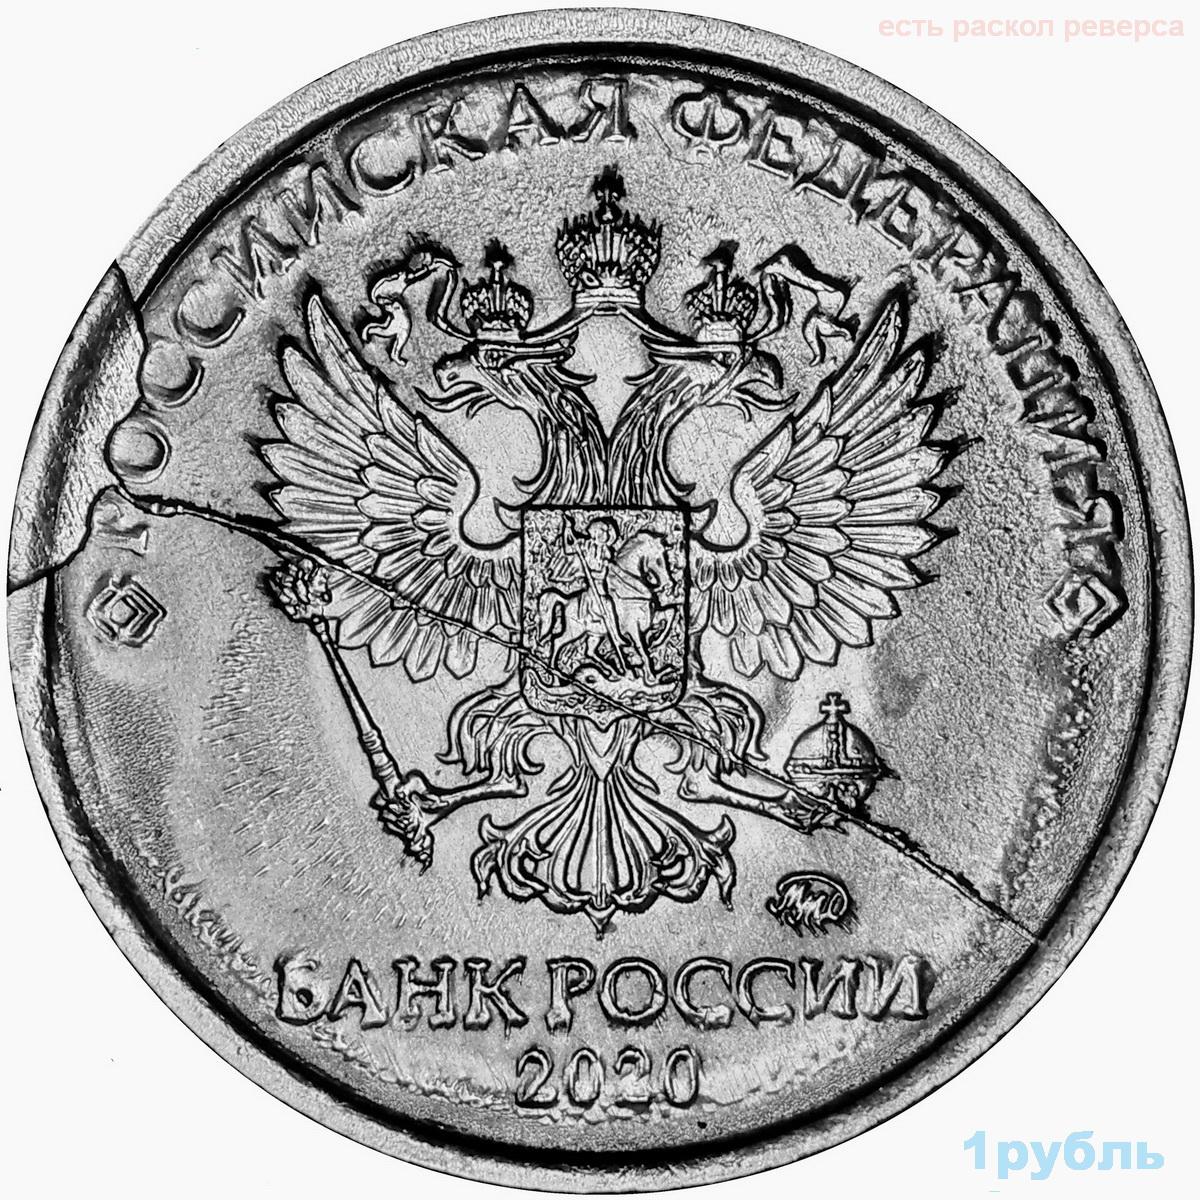 5 рубль 2020 г. Аверс монеты 1 рубль. Монета 1 рубль 2020. Раскол монеты 1 рубль 2020. 1 Рубль 2020 брак раскол штемпеля.